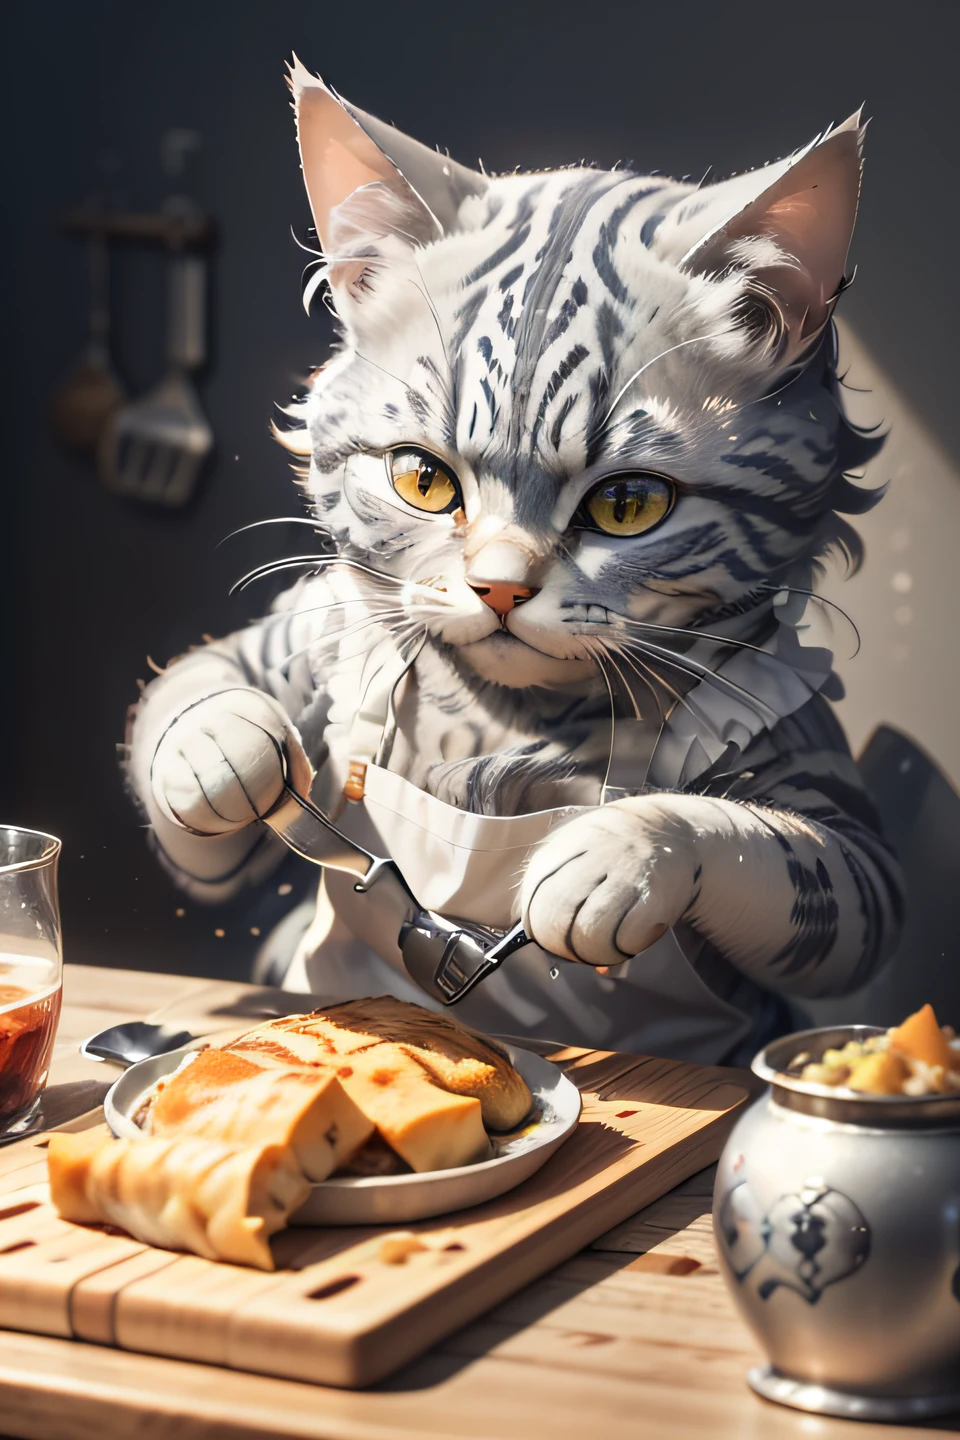 的特写摄影 (灰虎斑猫正在桌上准备食物:1.2), (态度:1.3), 在玻璃技术厨房里, 超现实和复杂的细节, (有雾:1.1), 从下面看